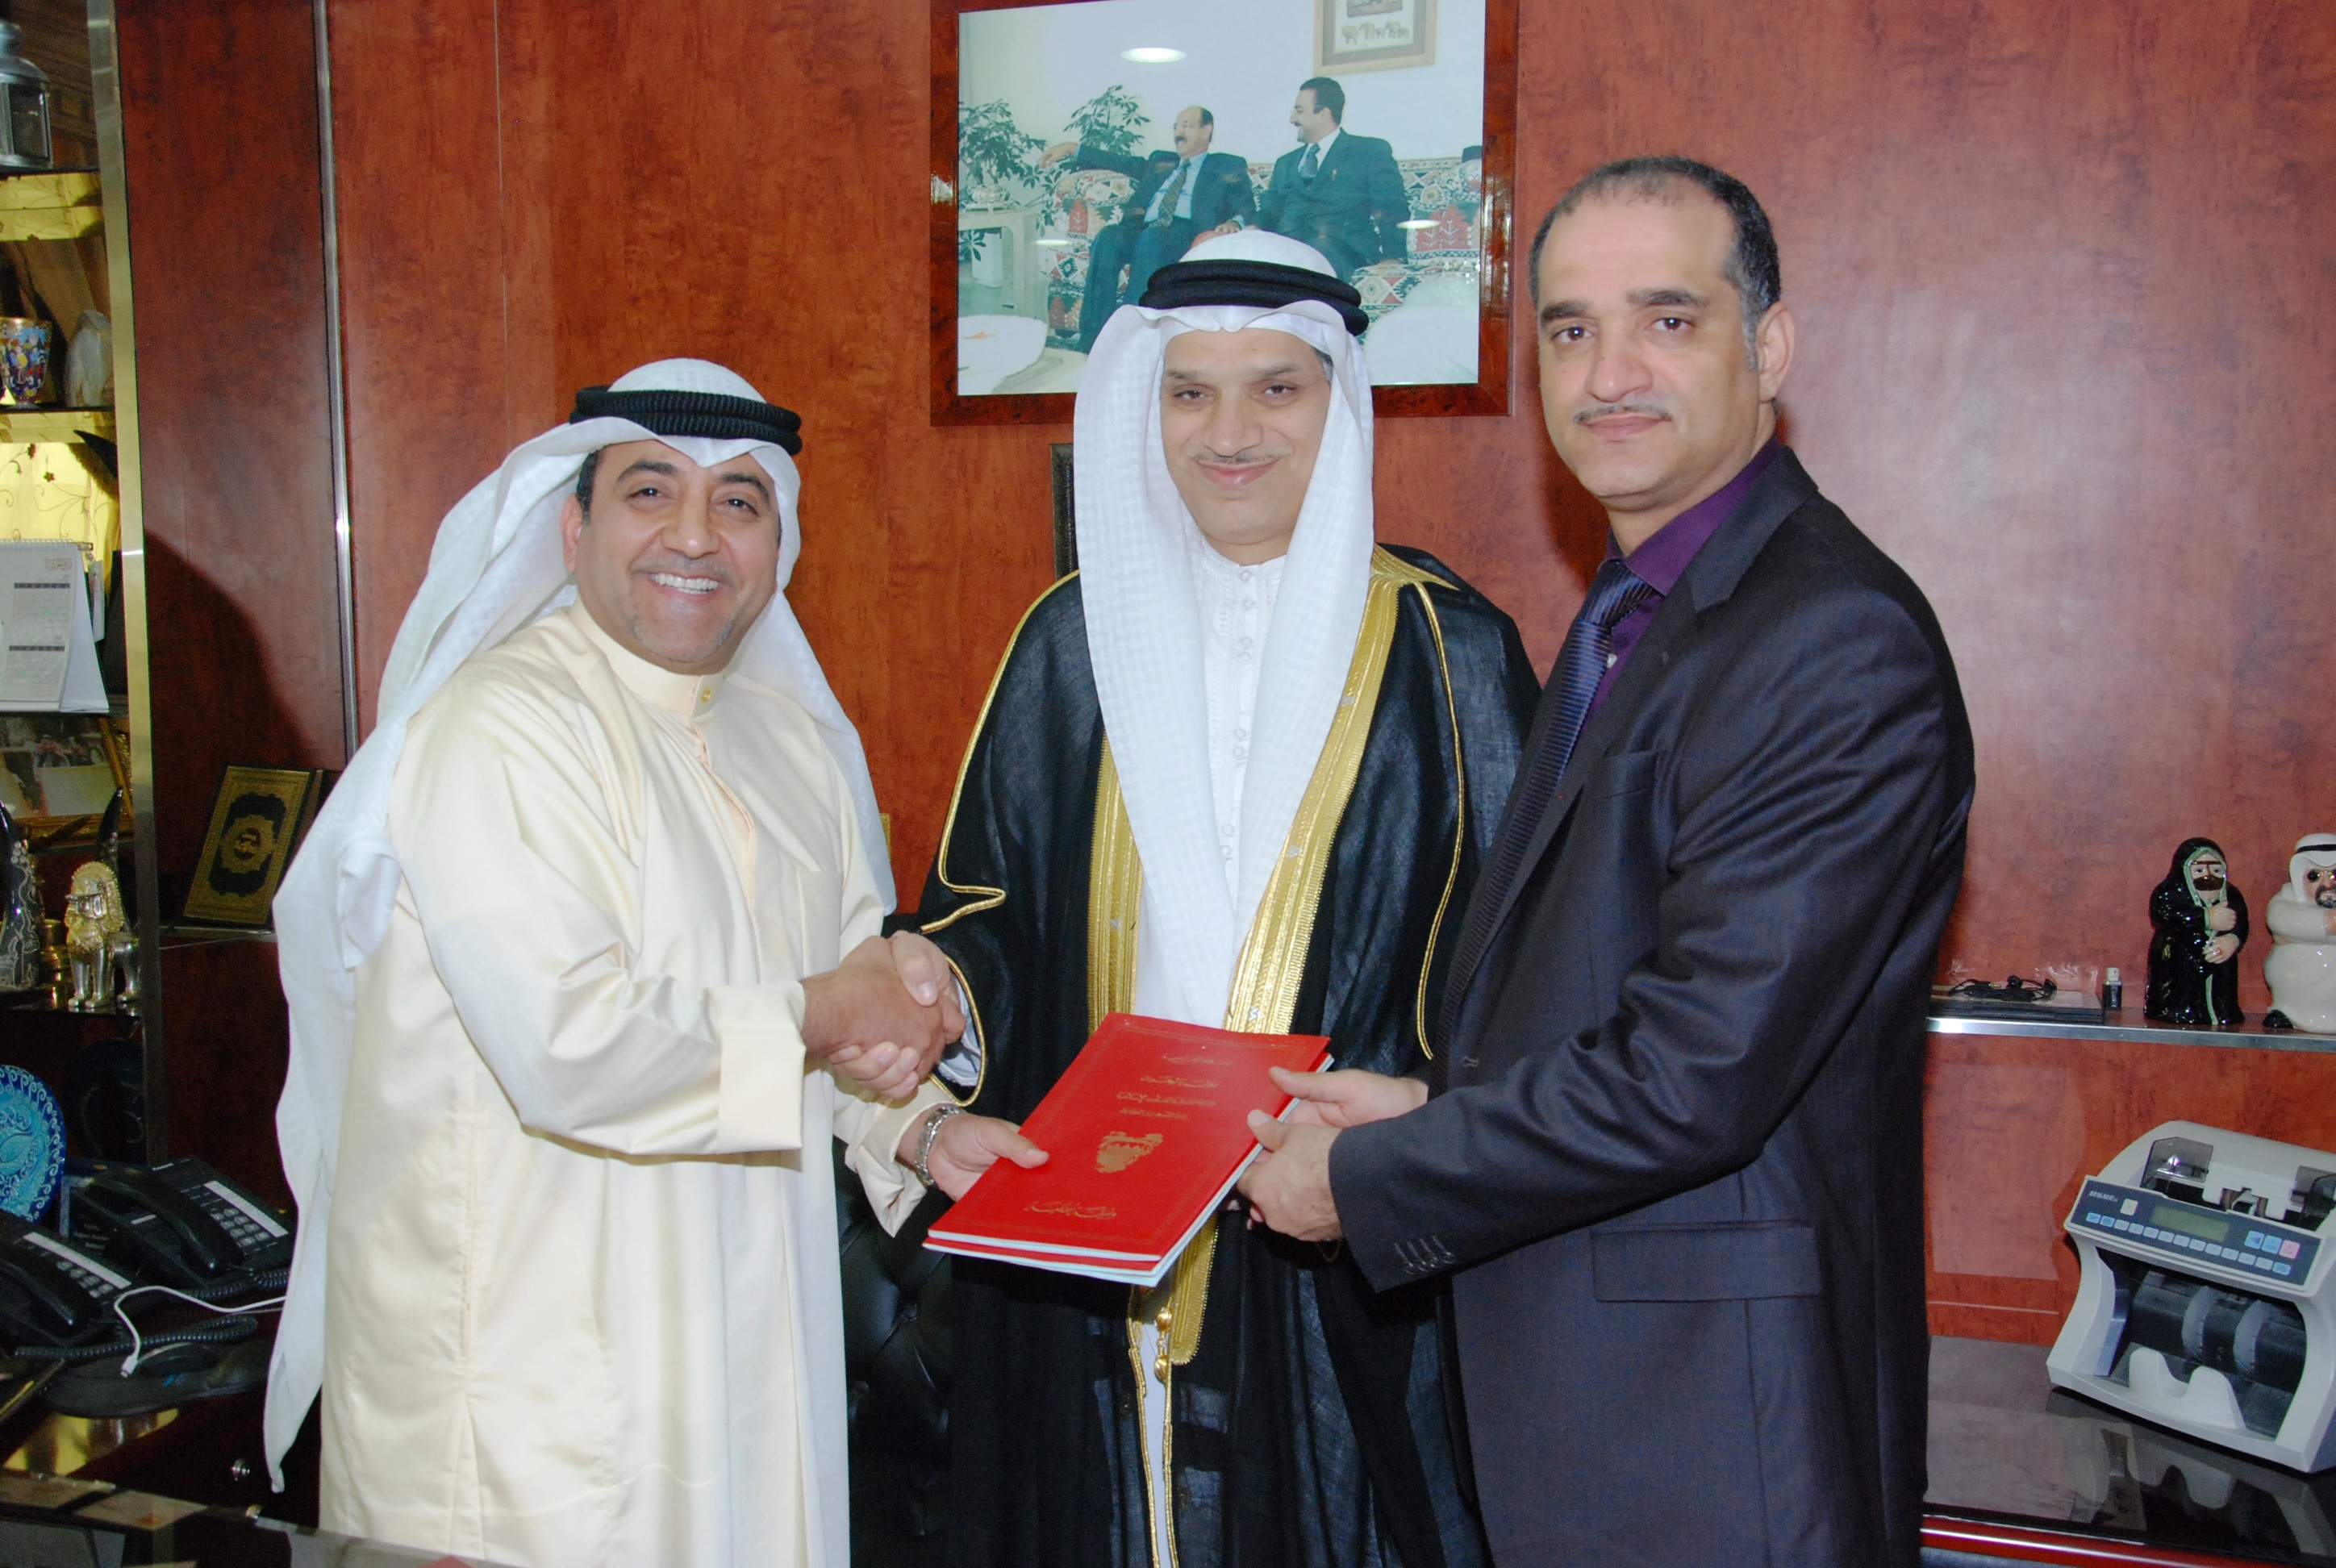 (المنظومة العقارية) تؤسس شركة في البحرين برأسمال 100 مليون دينار بحريني